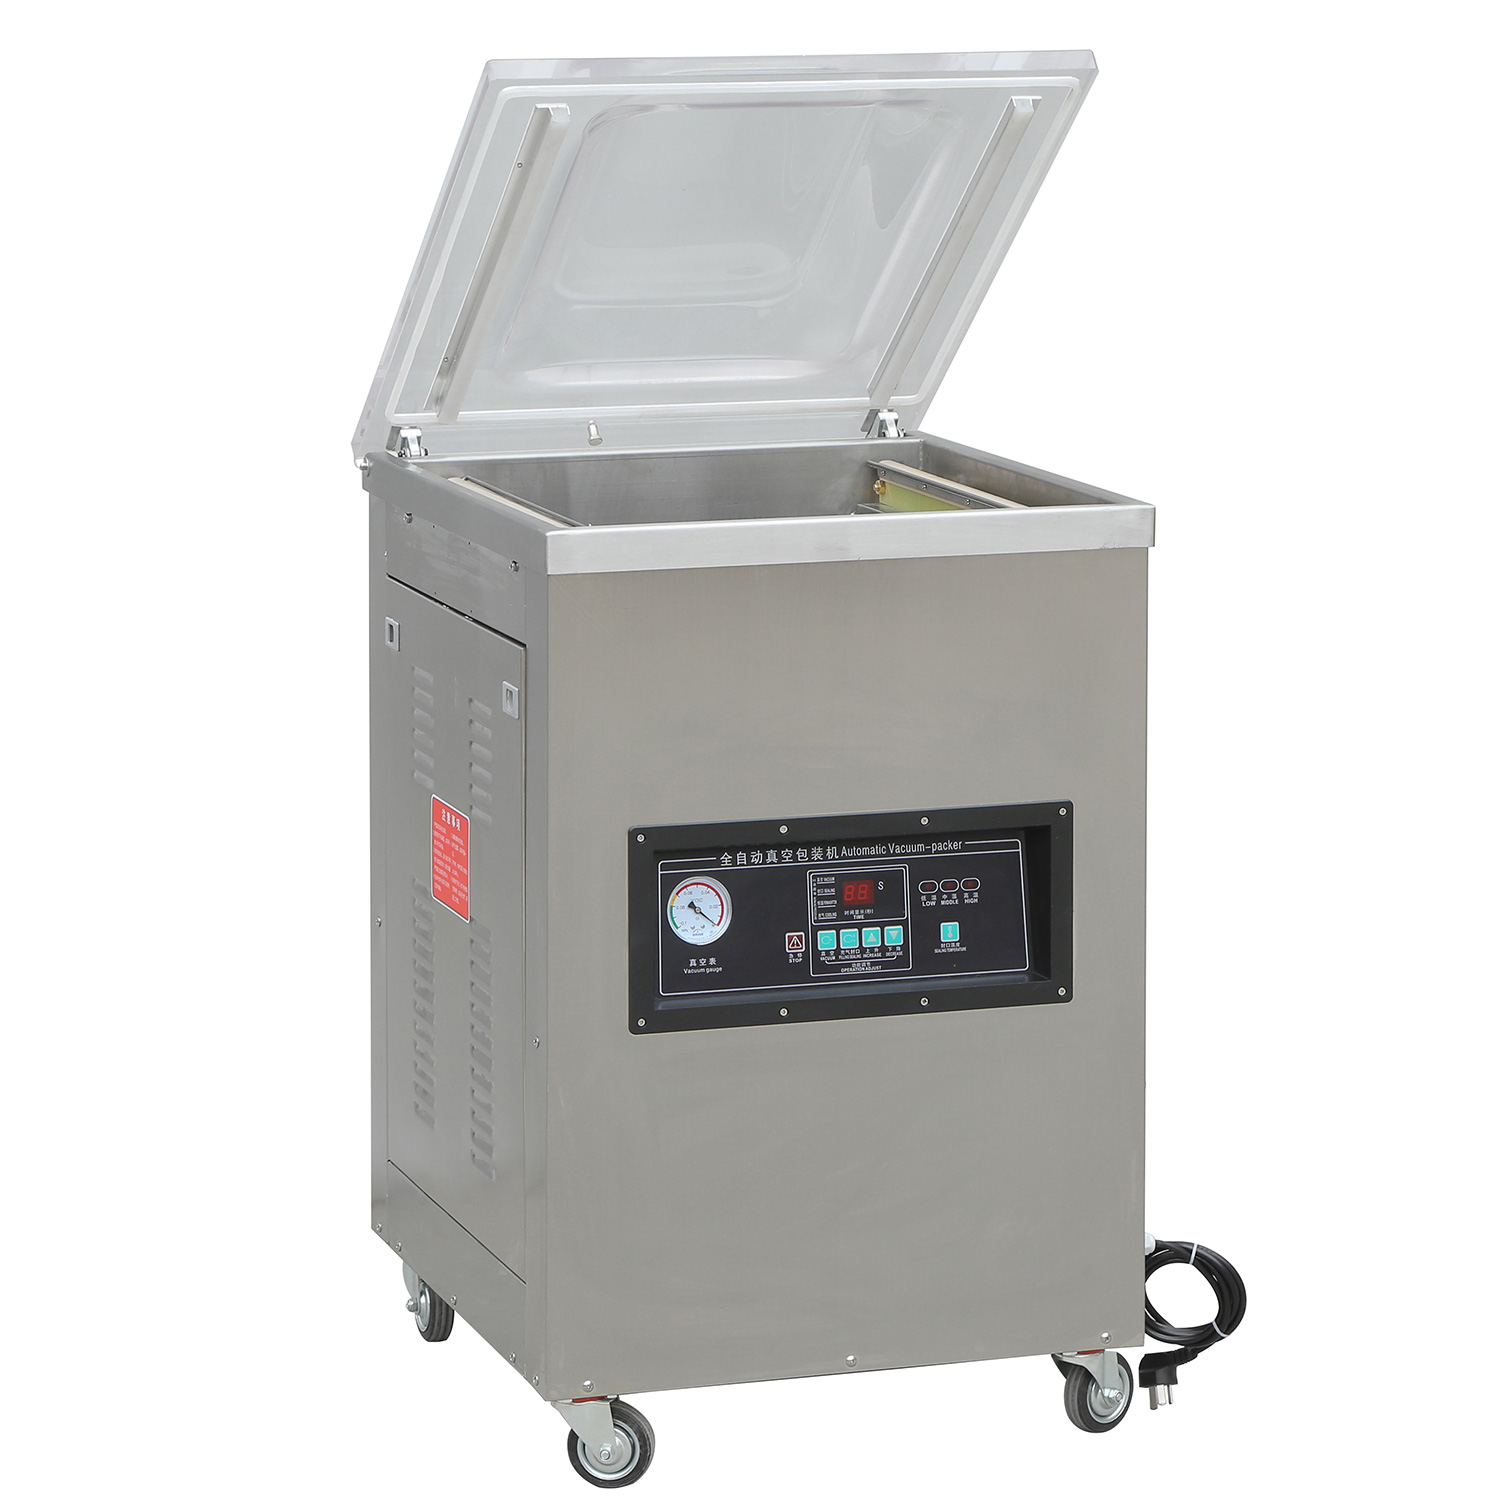 DZ-420 Chamber Vacuum Packaging Machine – CECLE Machine